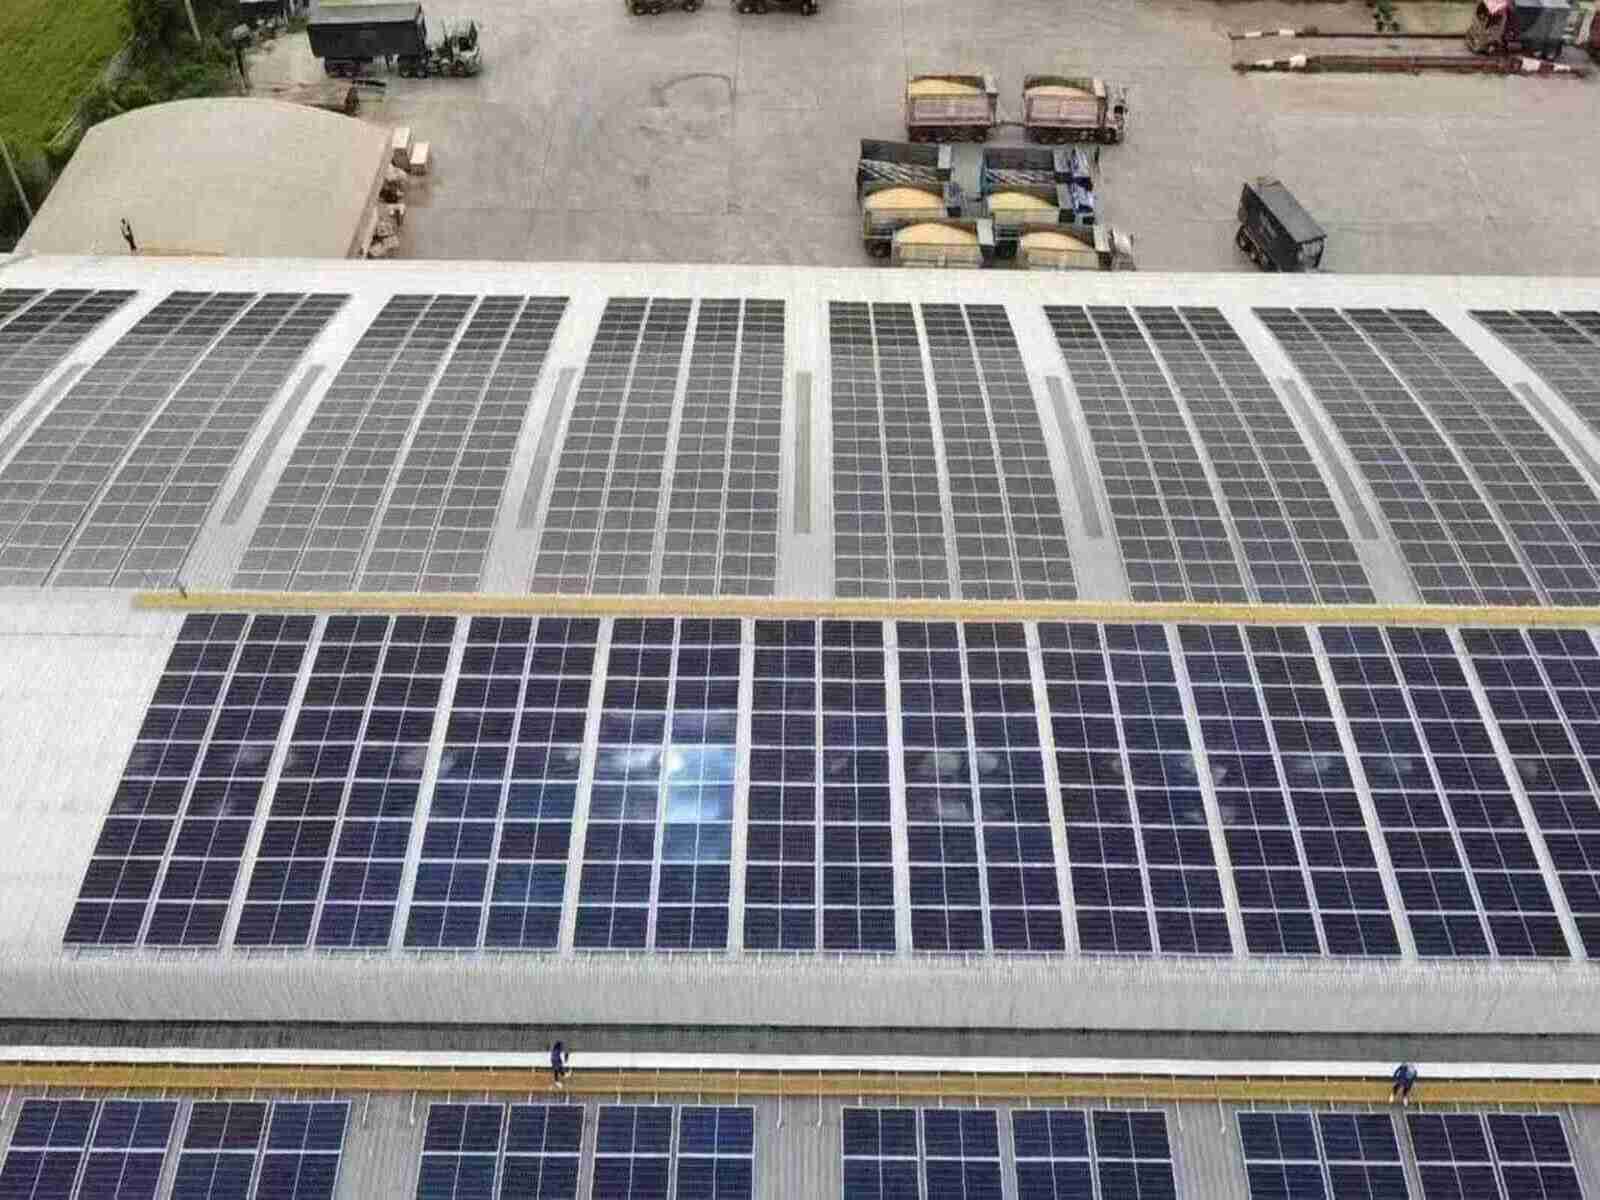 Solarpark St. Mary Bourne: Pläne zur Stromversorgung von 7.200 Haushalten eingereicht